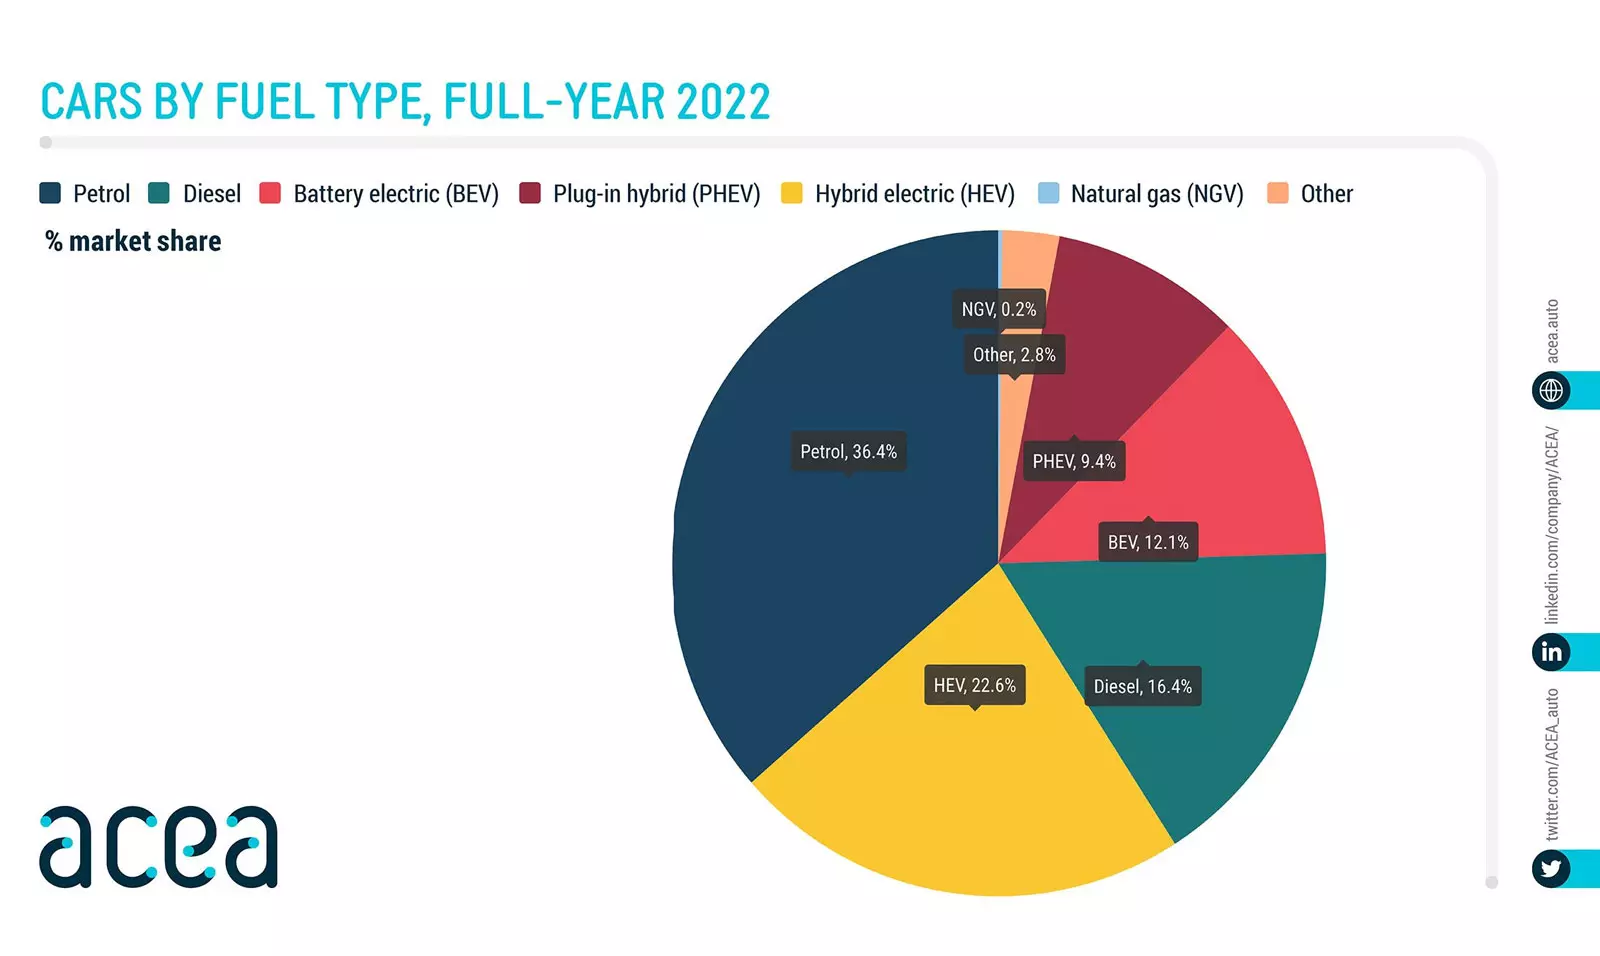 ACEA - duży wzrost rejestracji aut LPG w 2022 r.